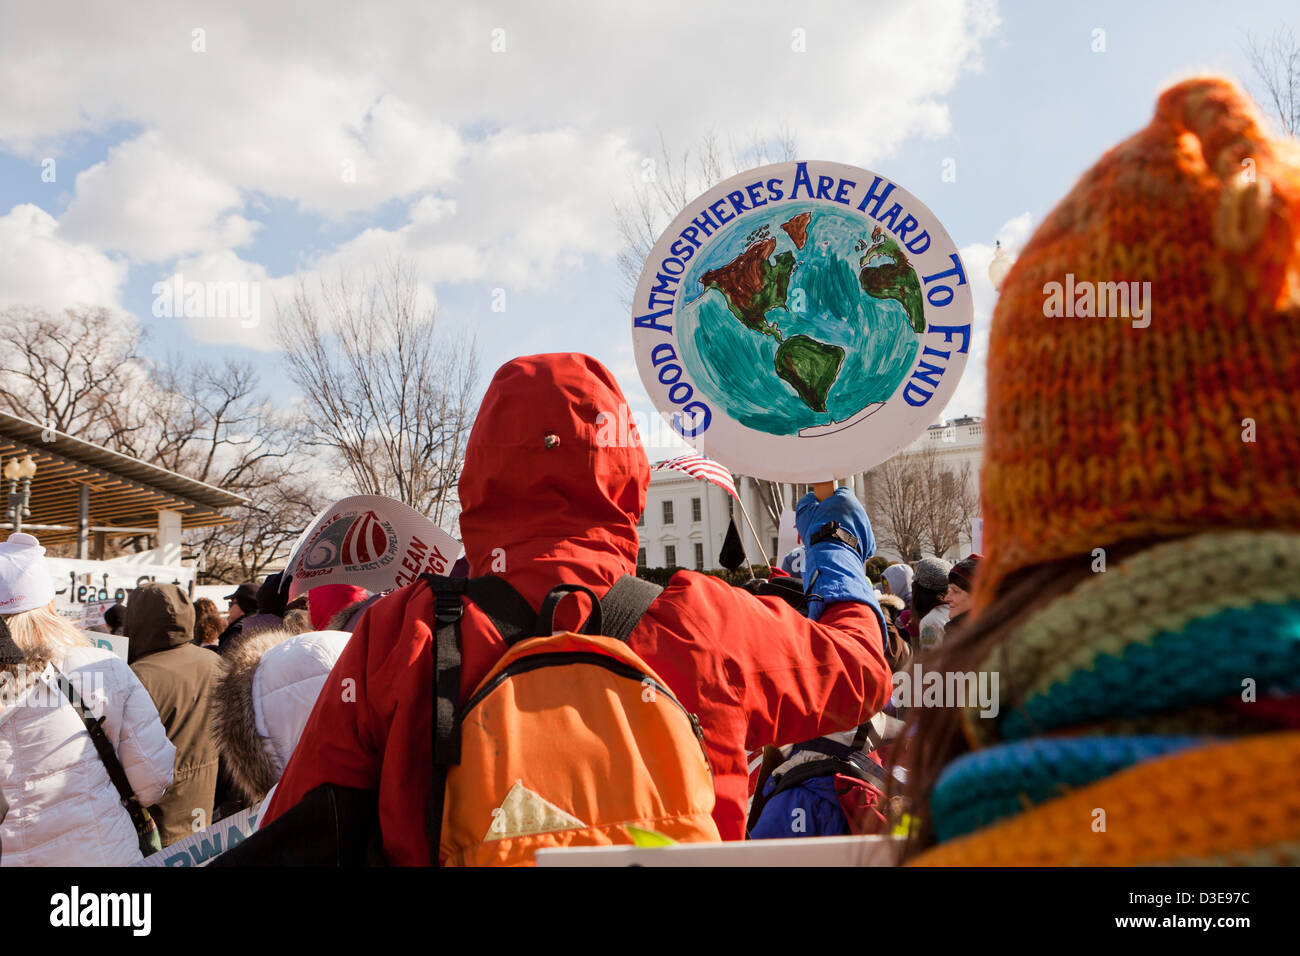 Les militants protestent contre les changements climatiques - Washington, DC USA Banque D'Images